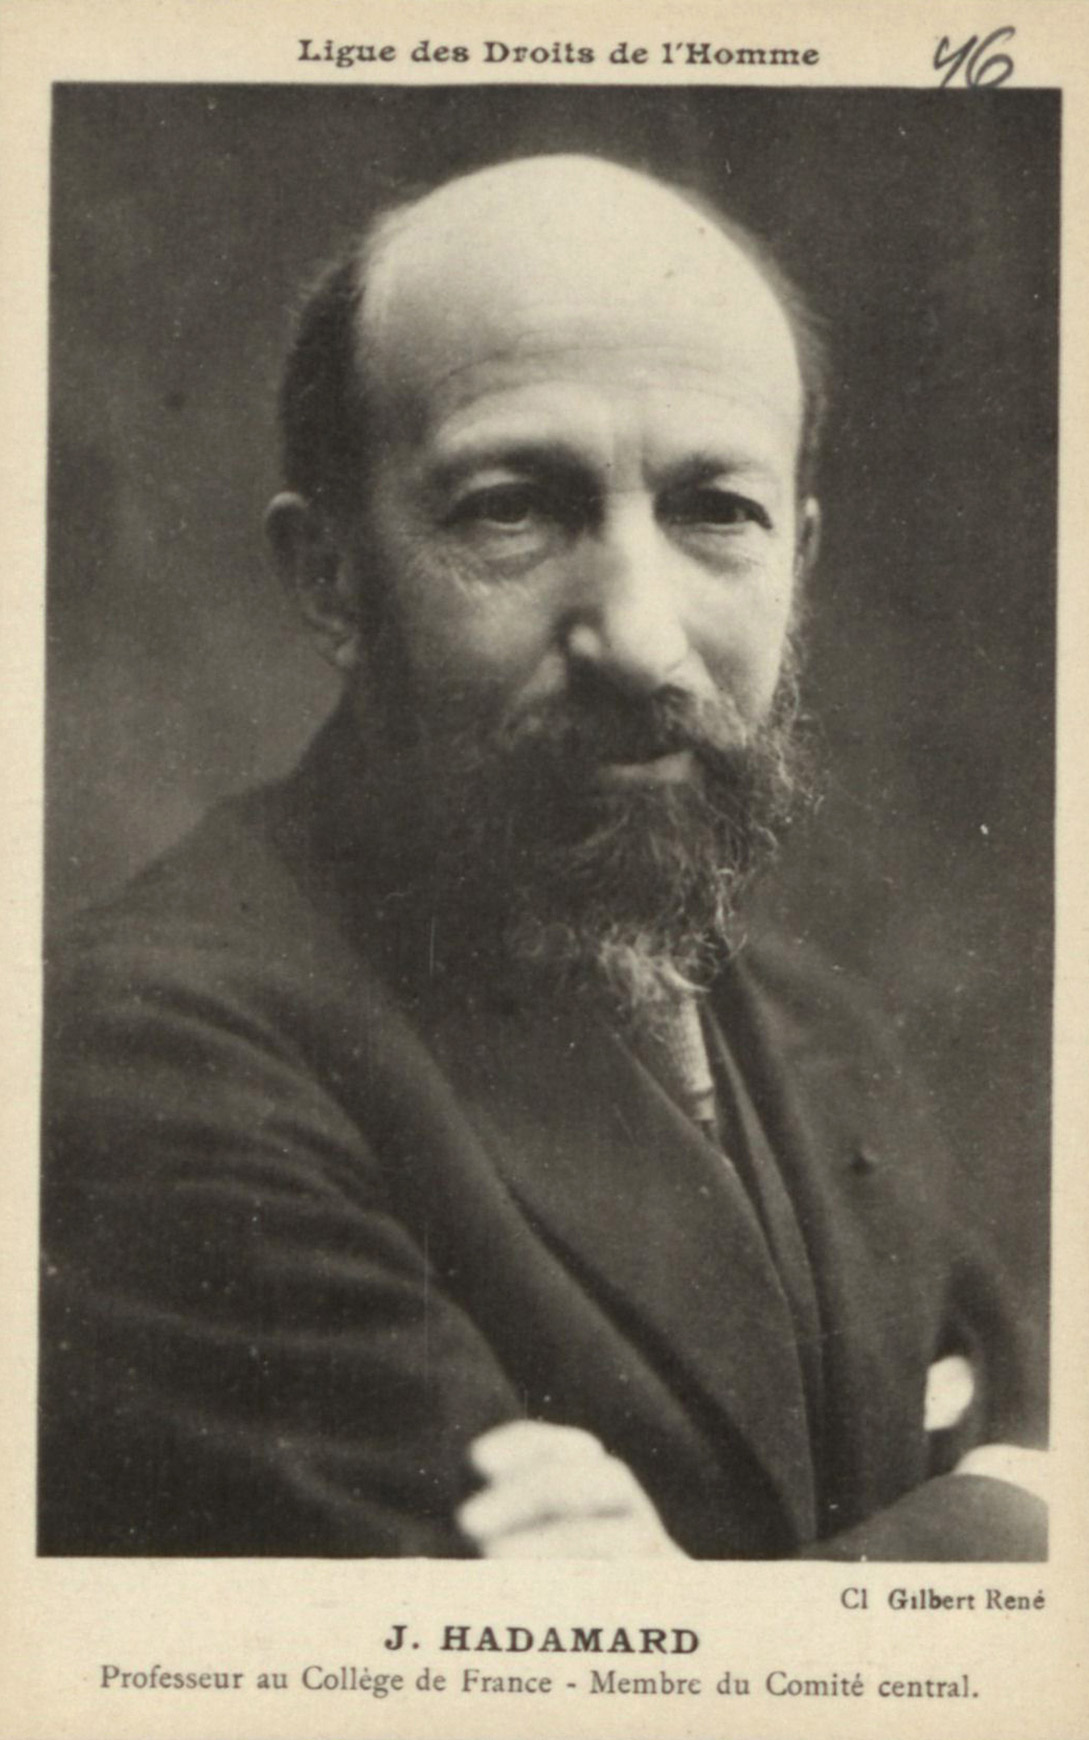 Portrait de Jacques Hadamard, carte postale, s.d.